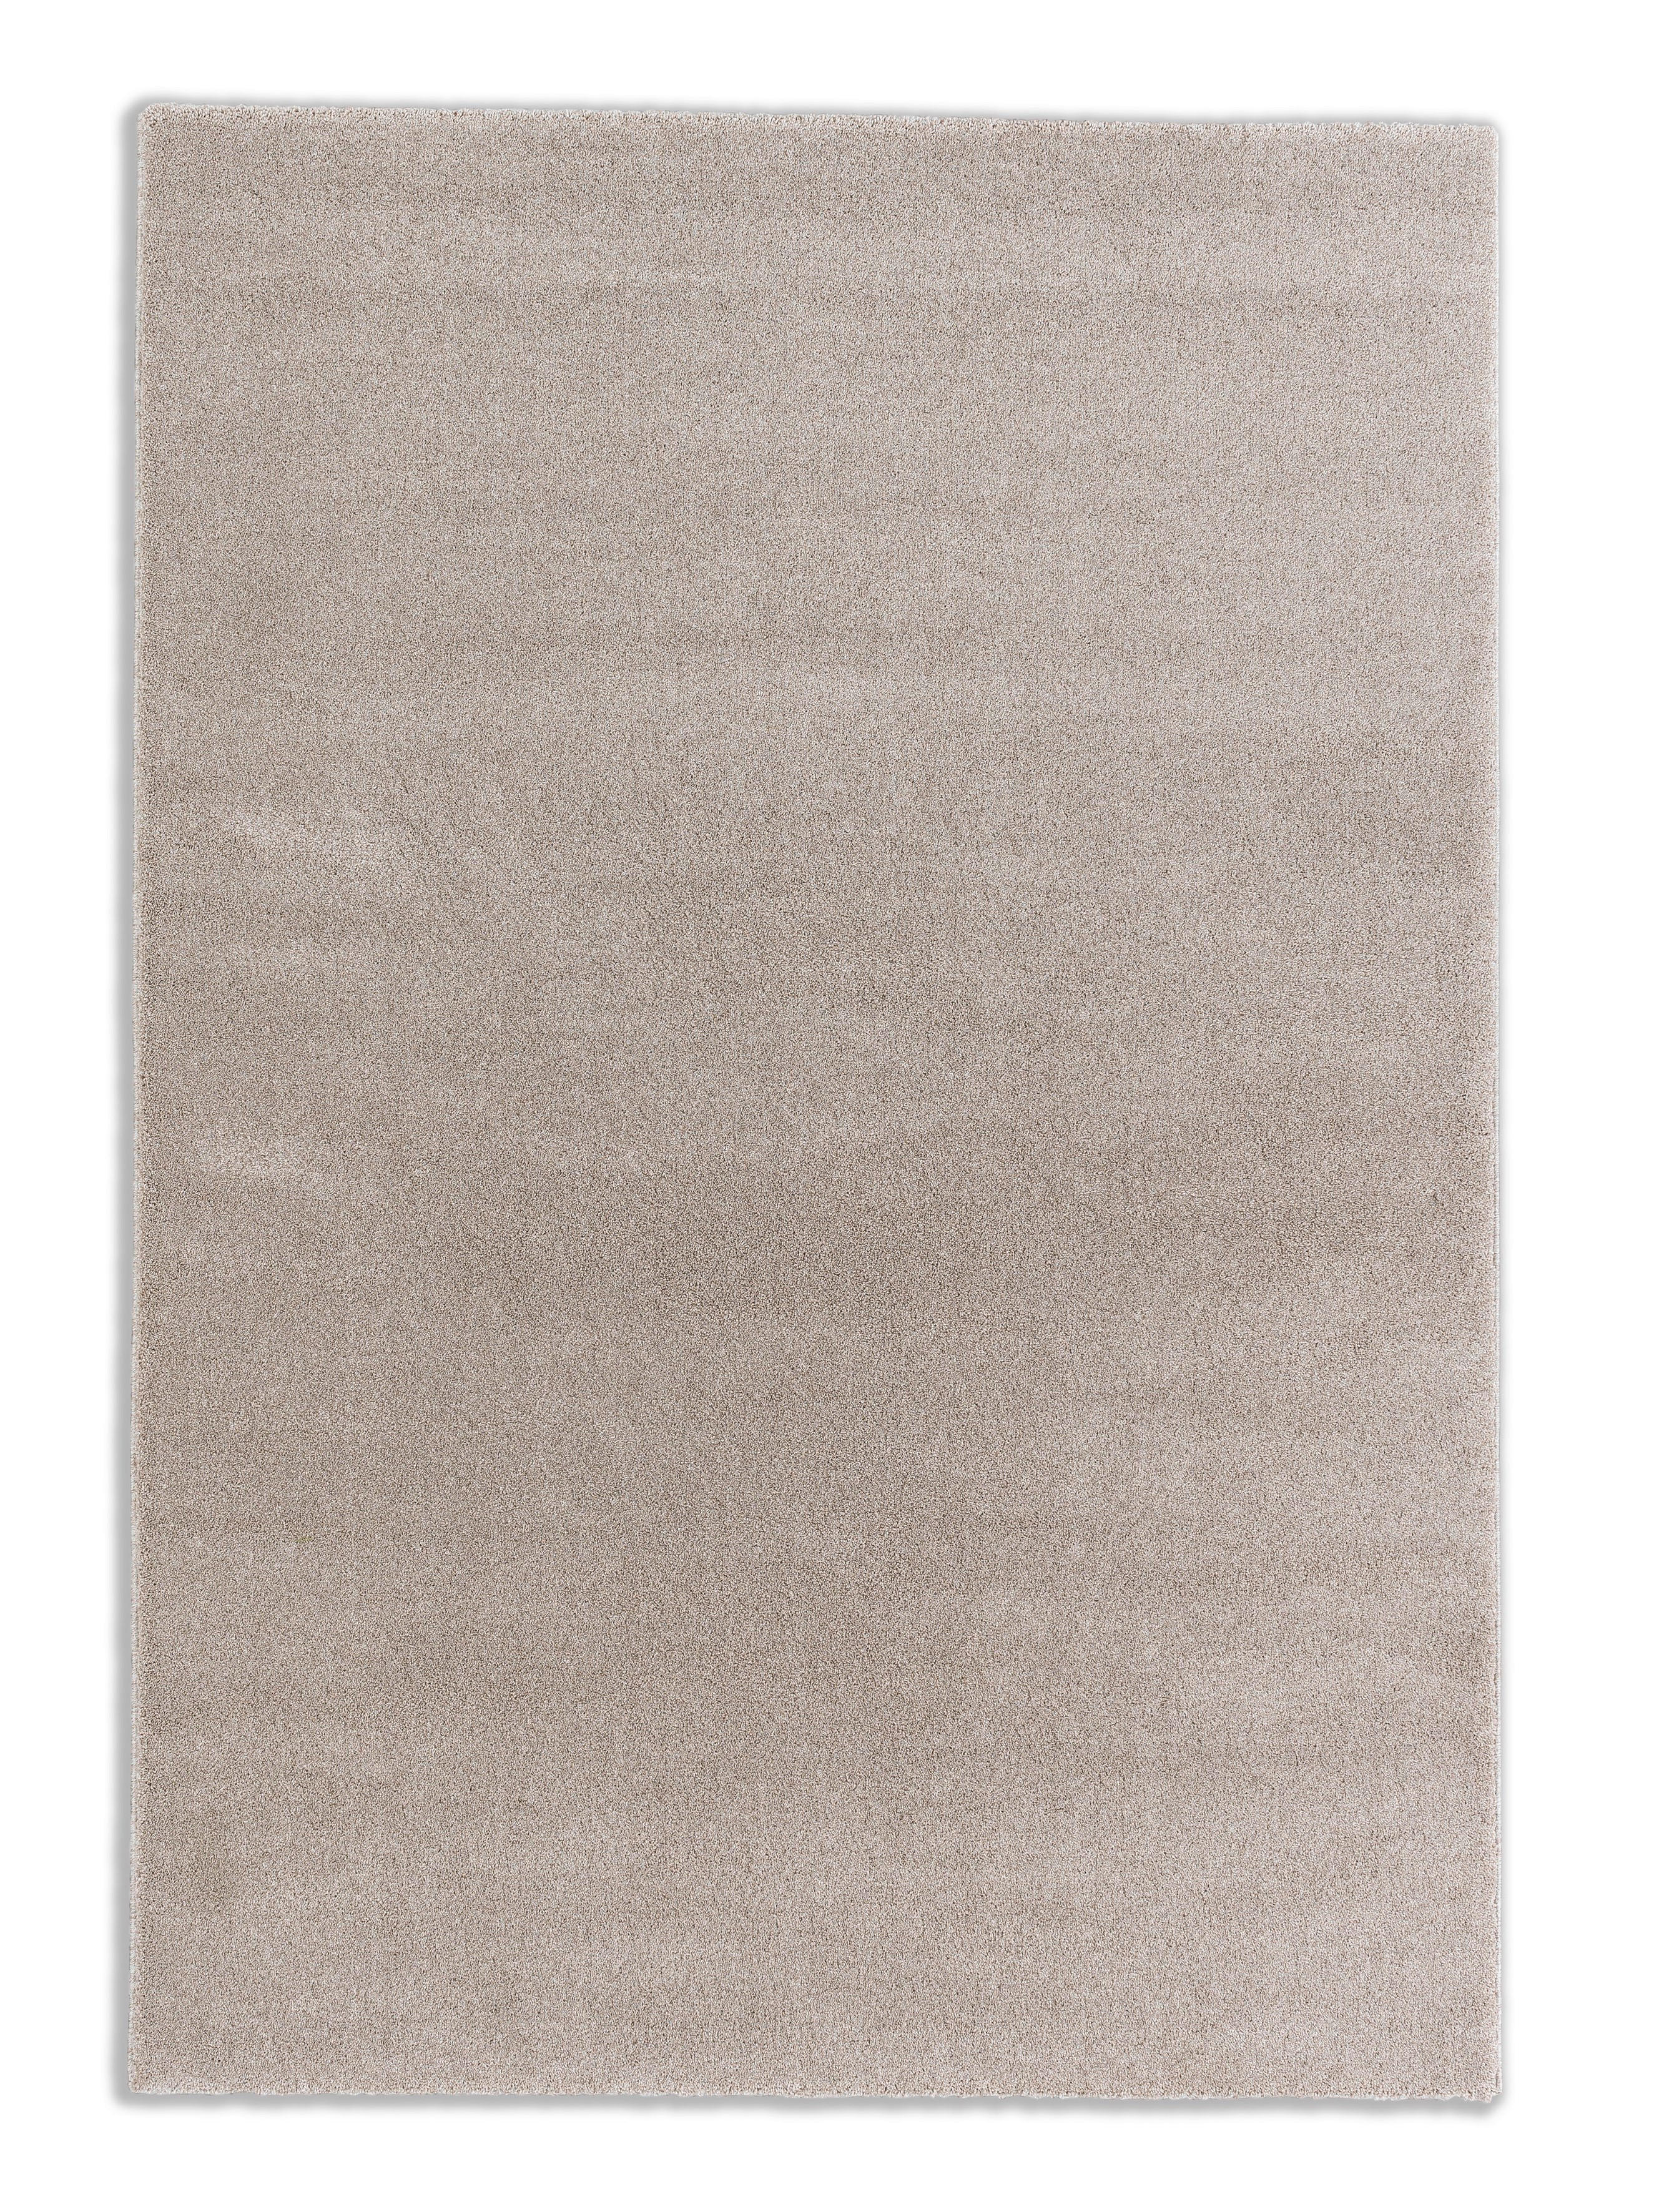 HOCHFLORTEPPICH  67/130 cm  gewebt  Beige   - Beige, Basics, Textil (67/130cm) - Schöner Wohnen